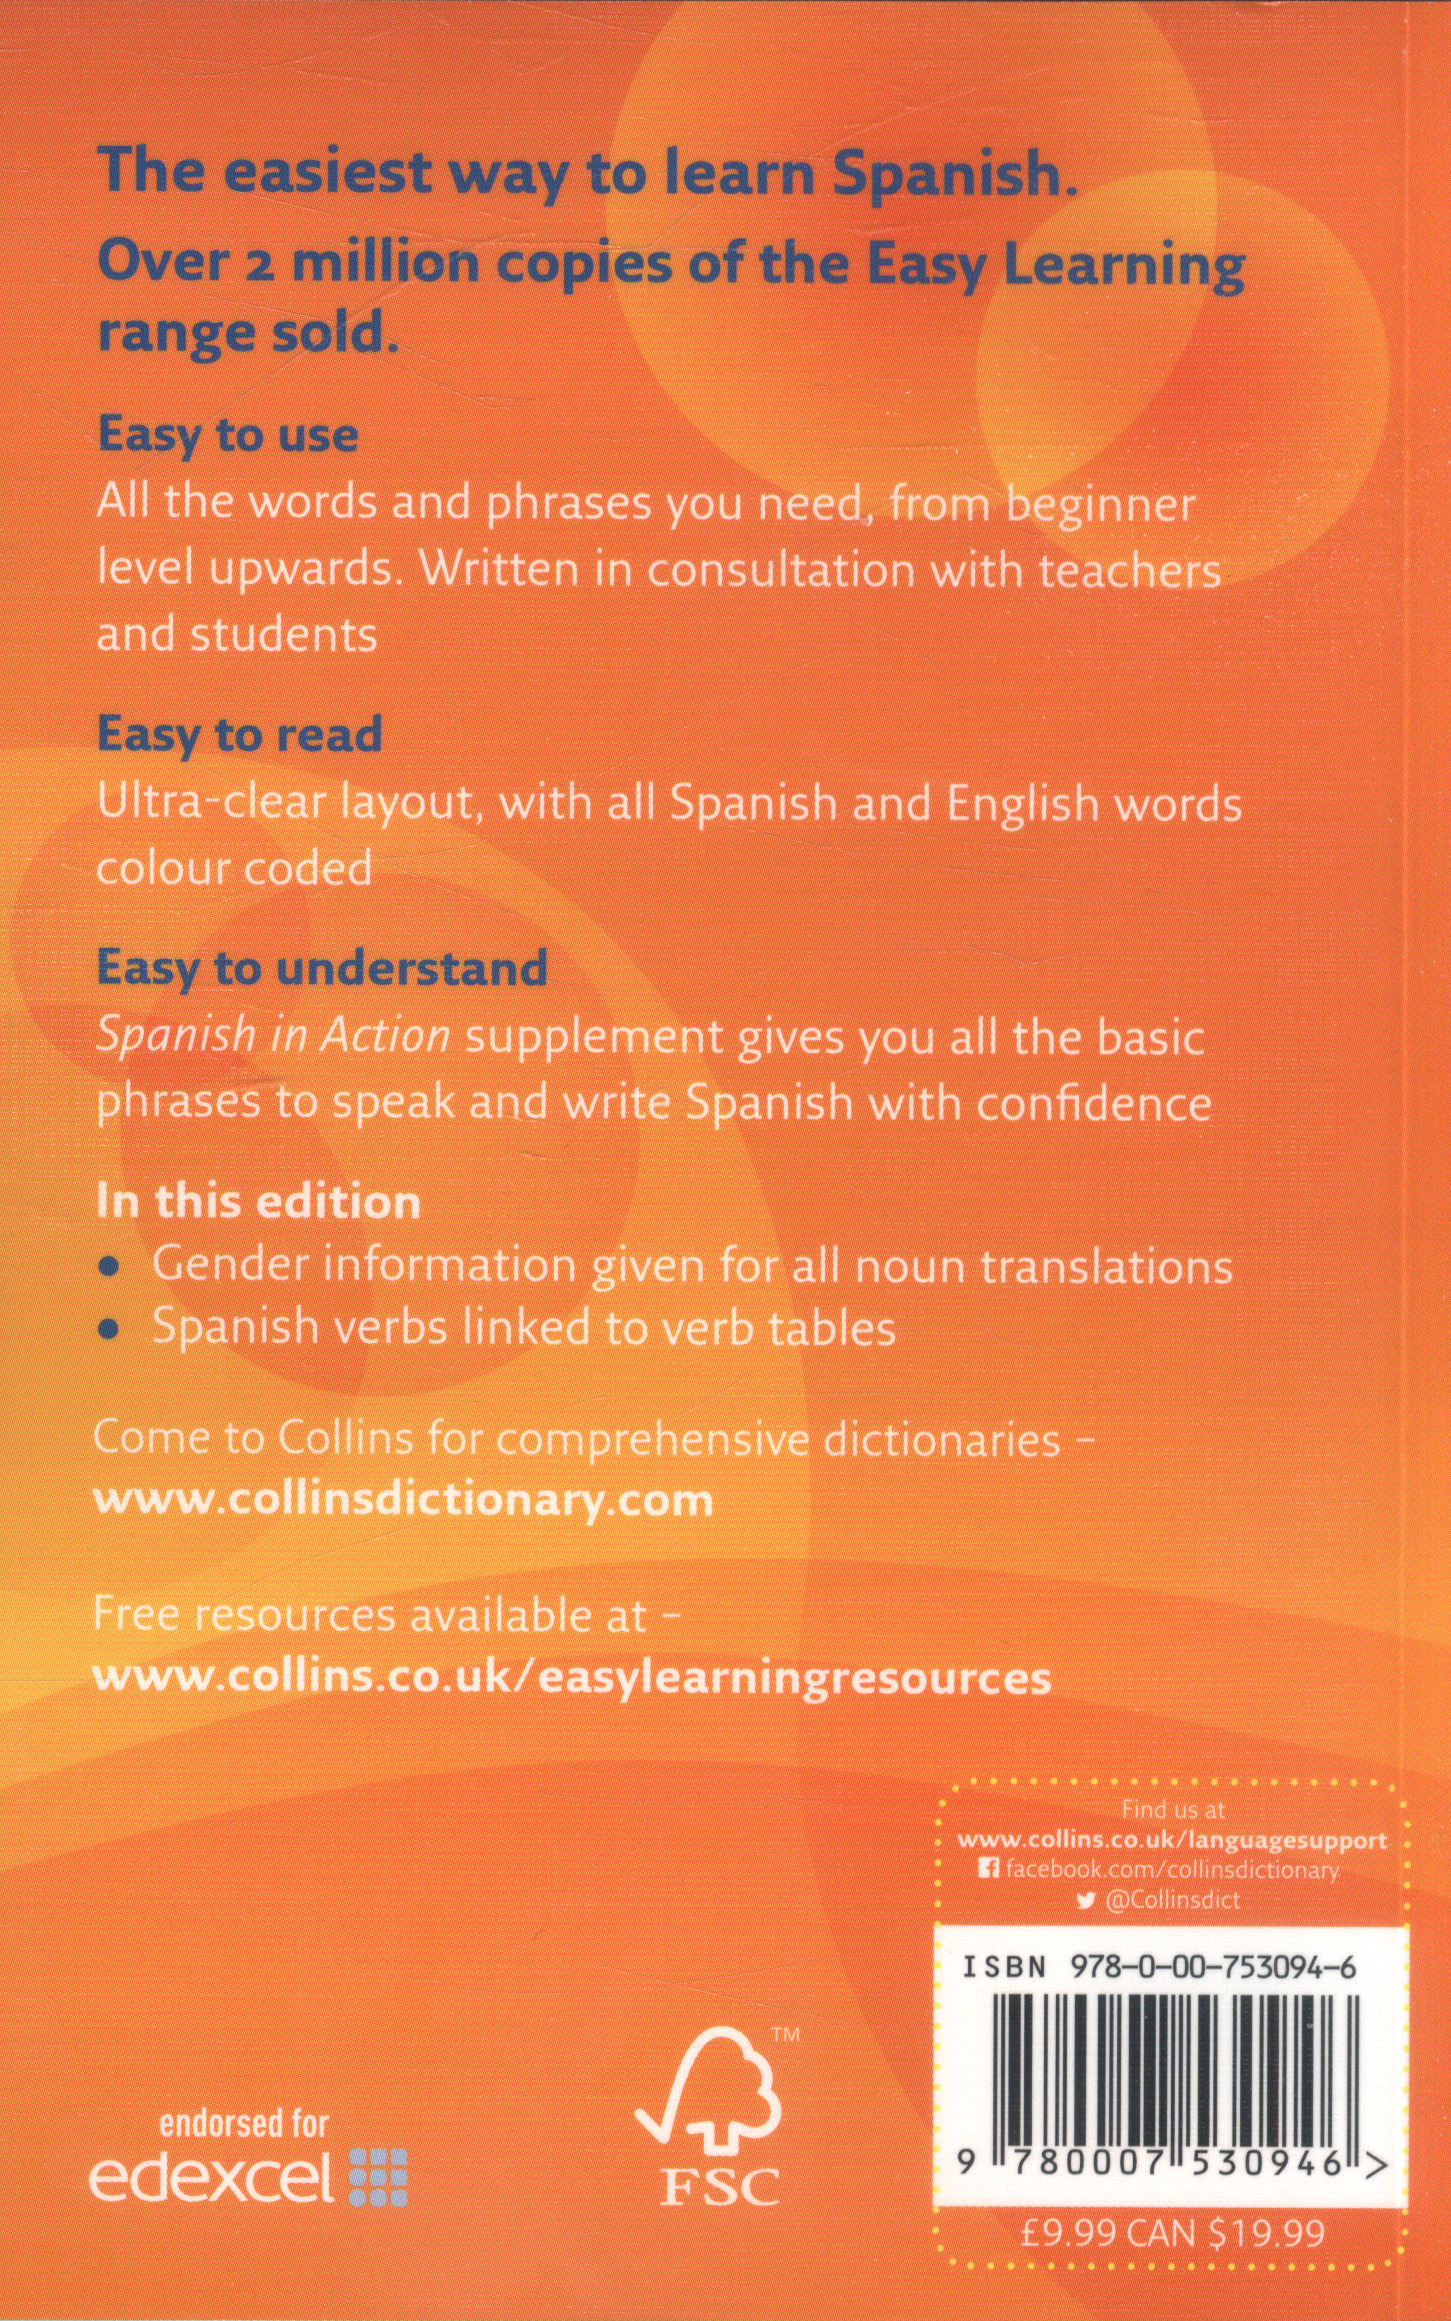 essay spanish dictionary